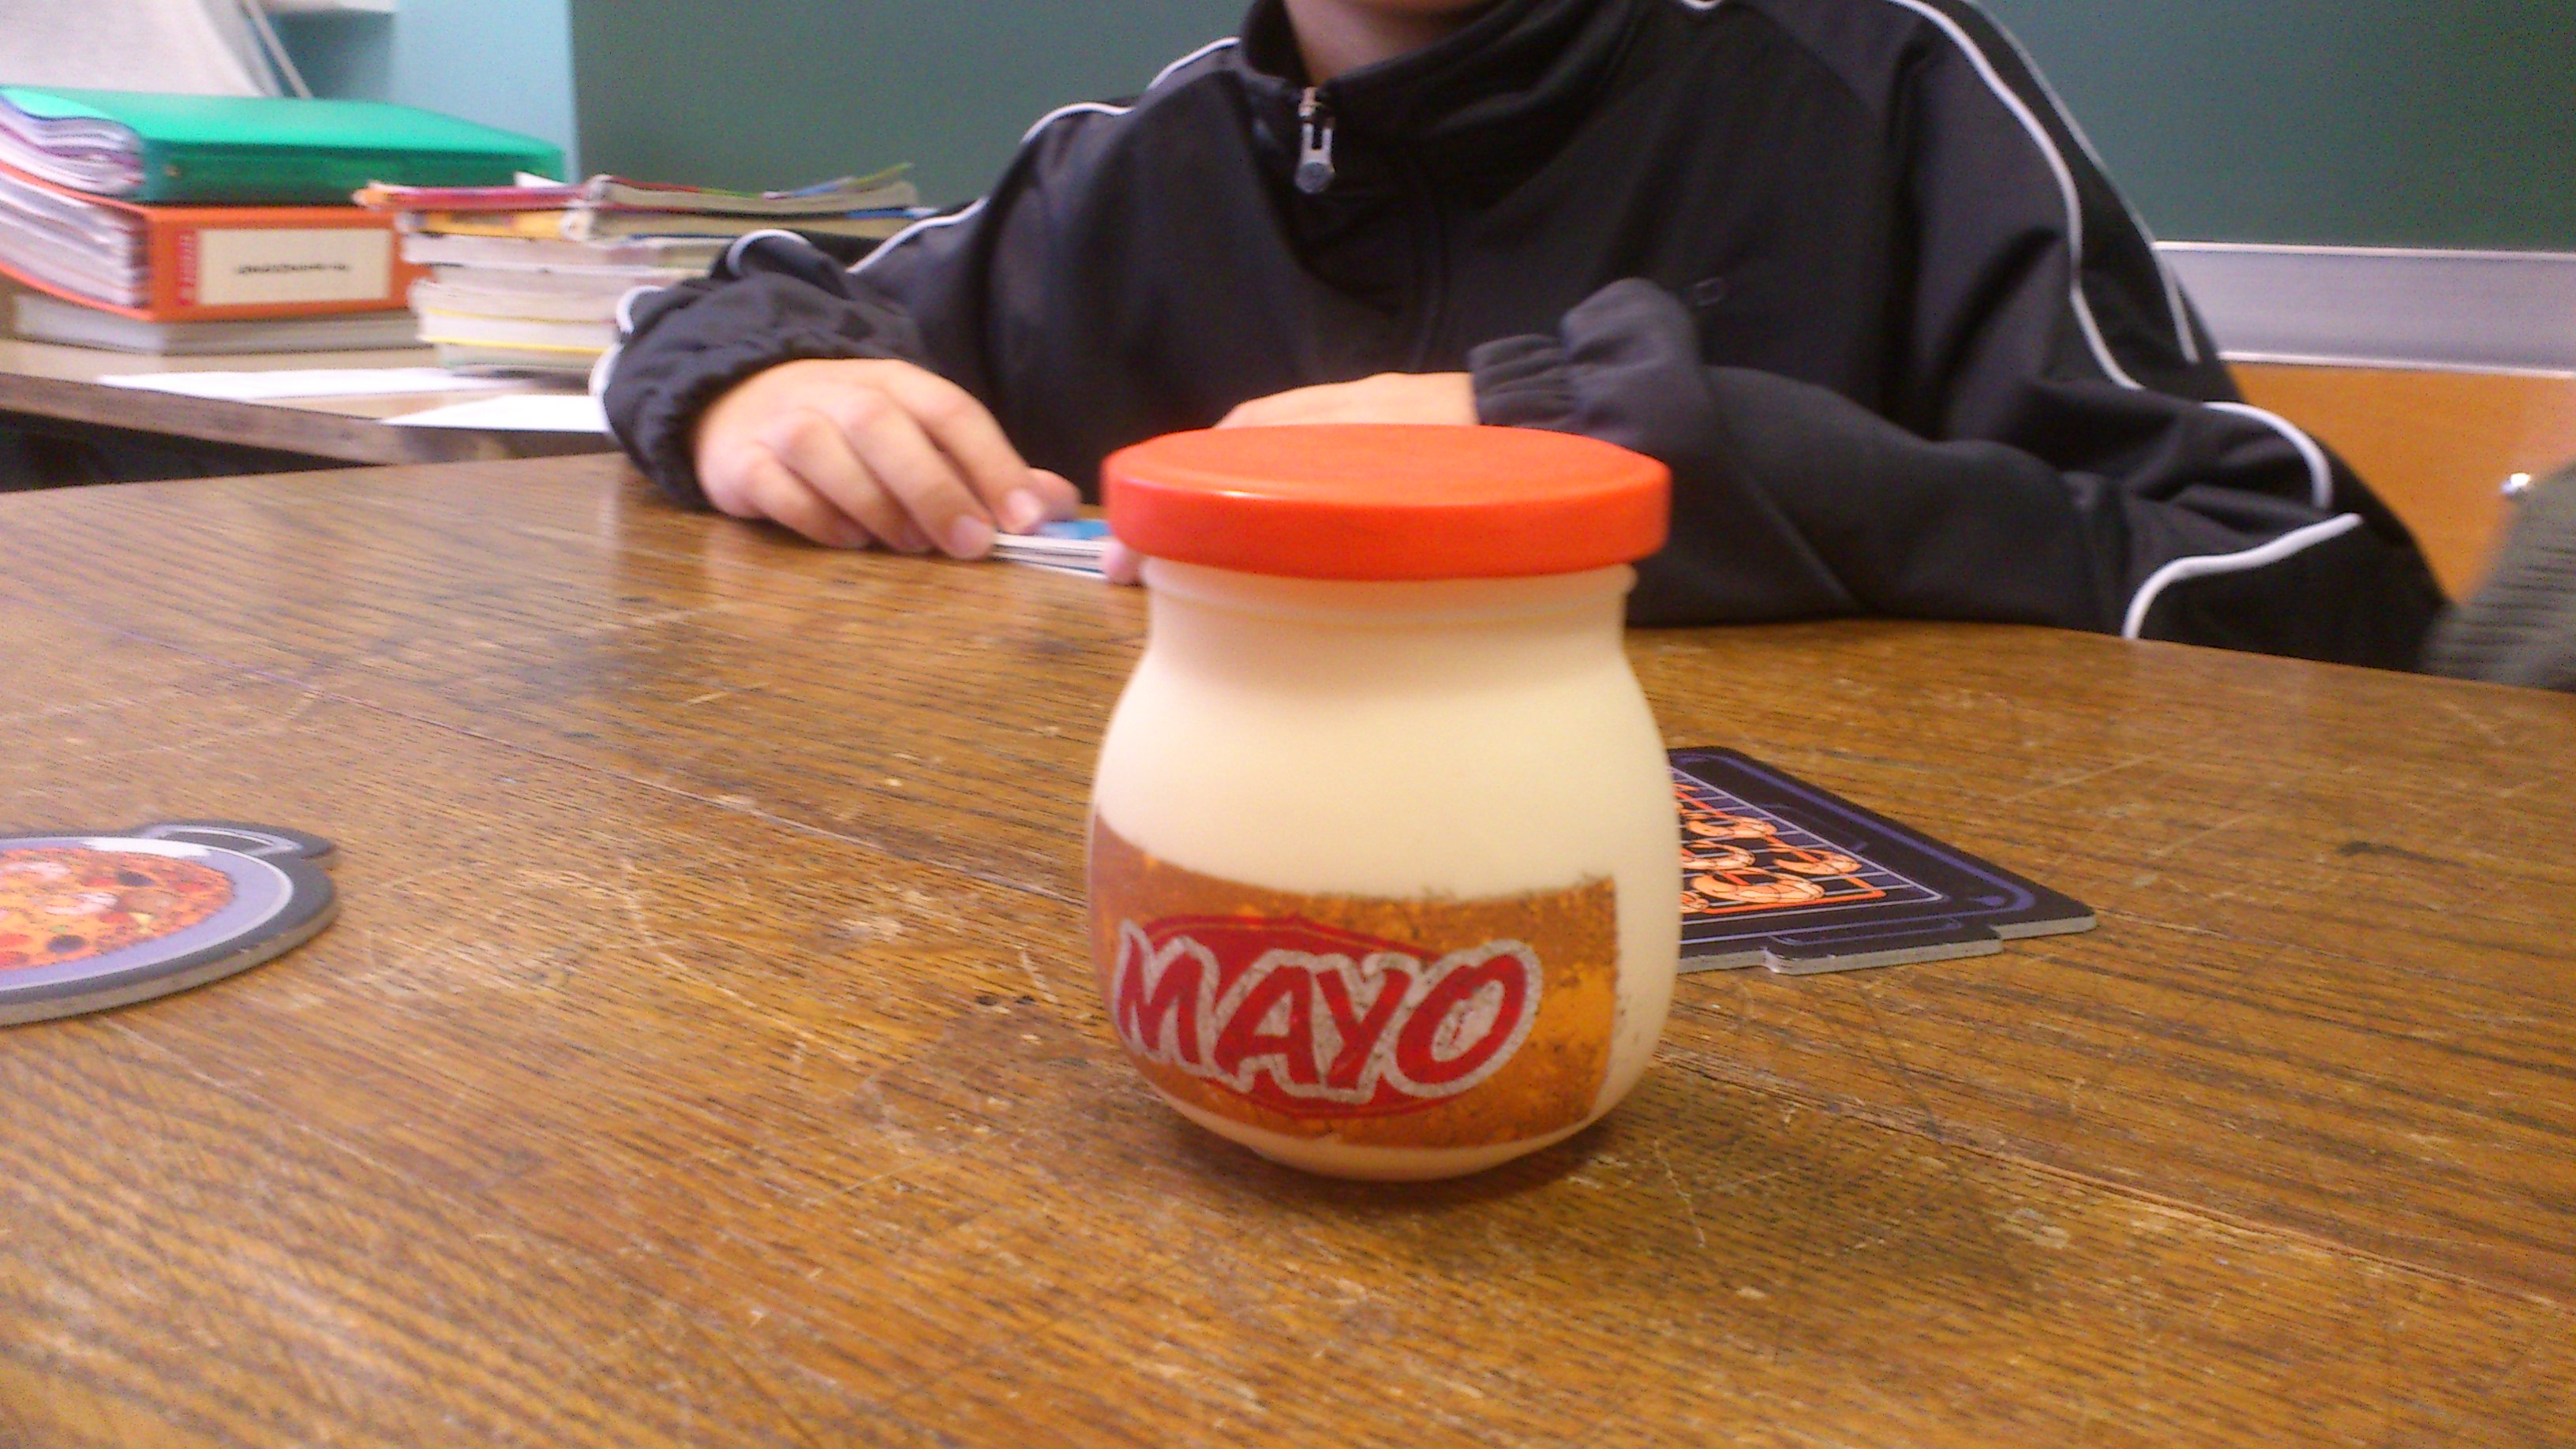 Qui sera le plus rapide pour prendre le pot de mayo ?